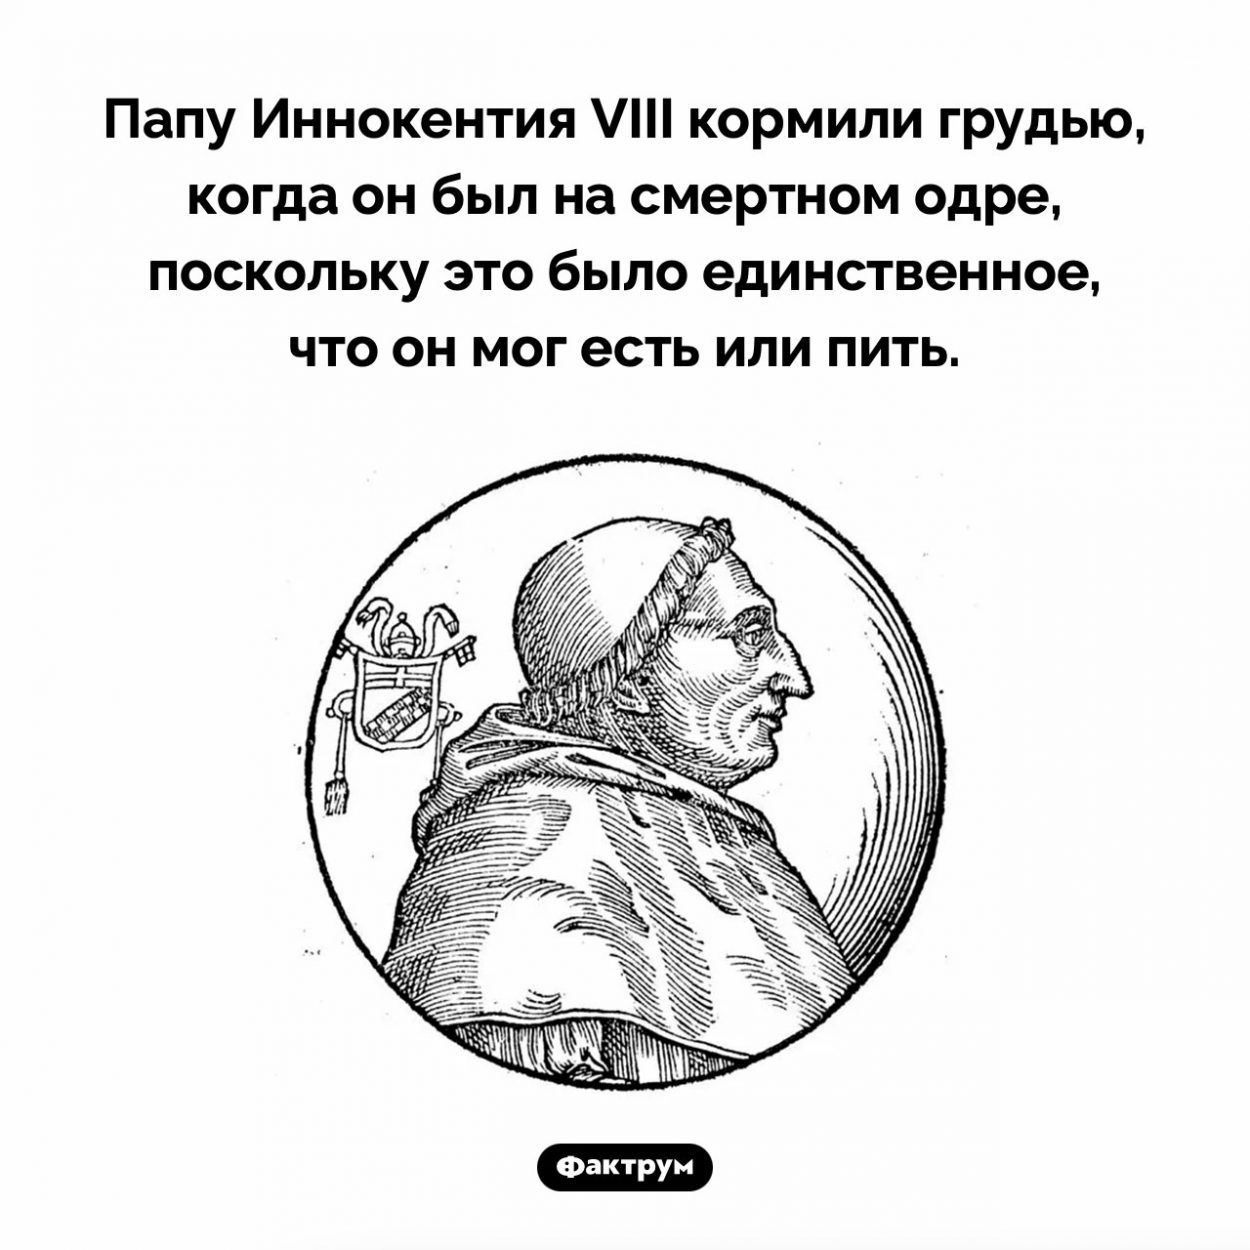 Зачем Папу кормили грудью. Папу Иннокентия VIII кормили грудью, когда он был на смертном одре, поскольку это было единственное, что он мог есть или пить.